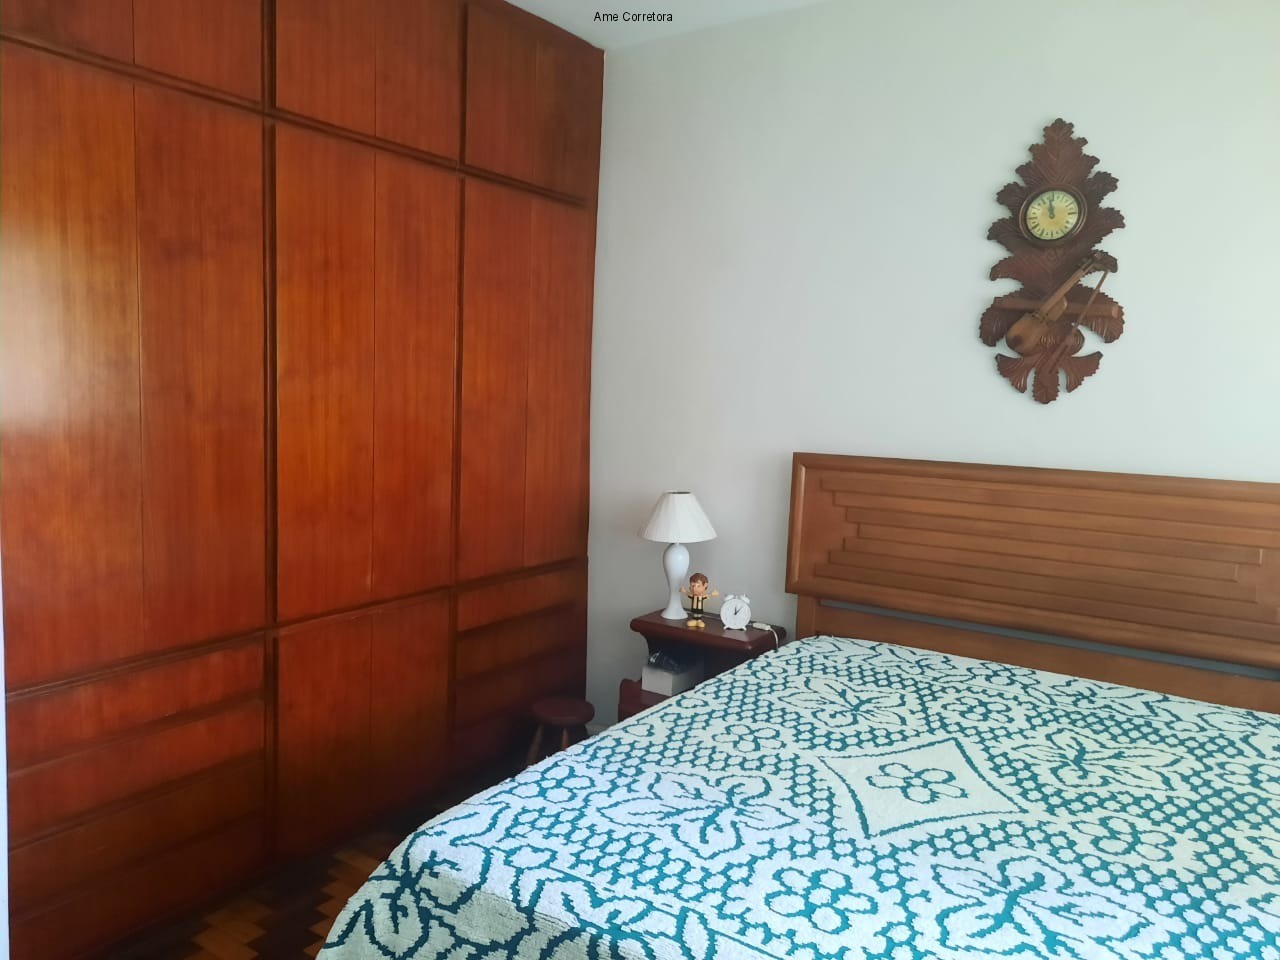 FOTO 09 - Apartamento 3 quartos à venda Rio de Janeiro,RJ - R$ 1.400.000 - AP00410 - 10